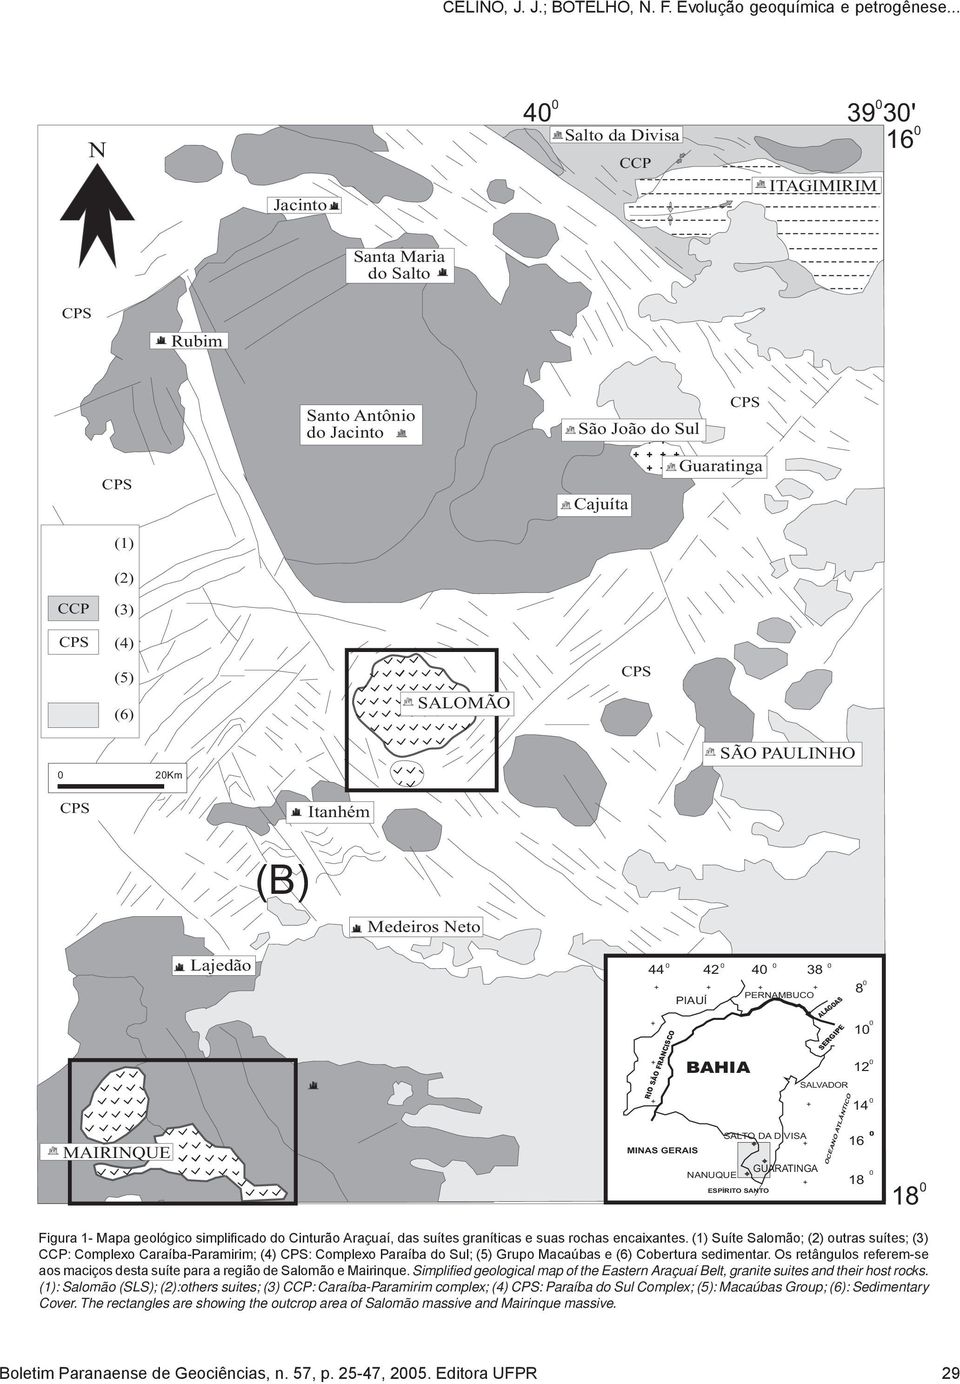 SALVADOR OCEANO ATLÂNTICO 8 1 12 14 16 18 18 Figura 1- Mapa geológico simplificado do Cinturão Araçuaí, das suítes graníticas e suas rochas encaixantes.